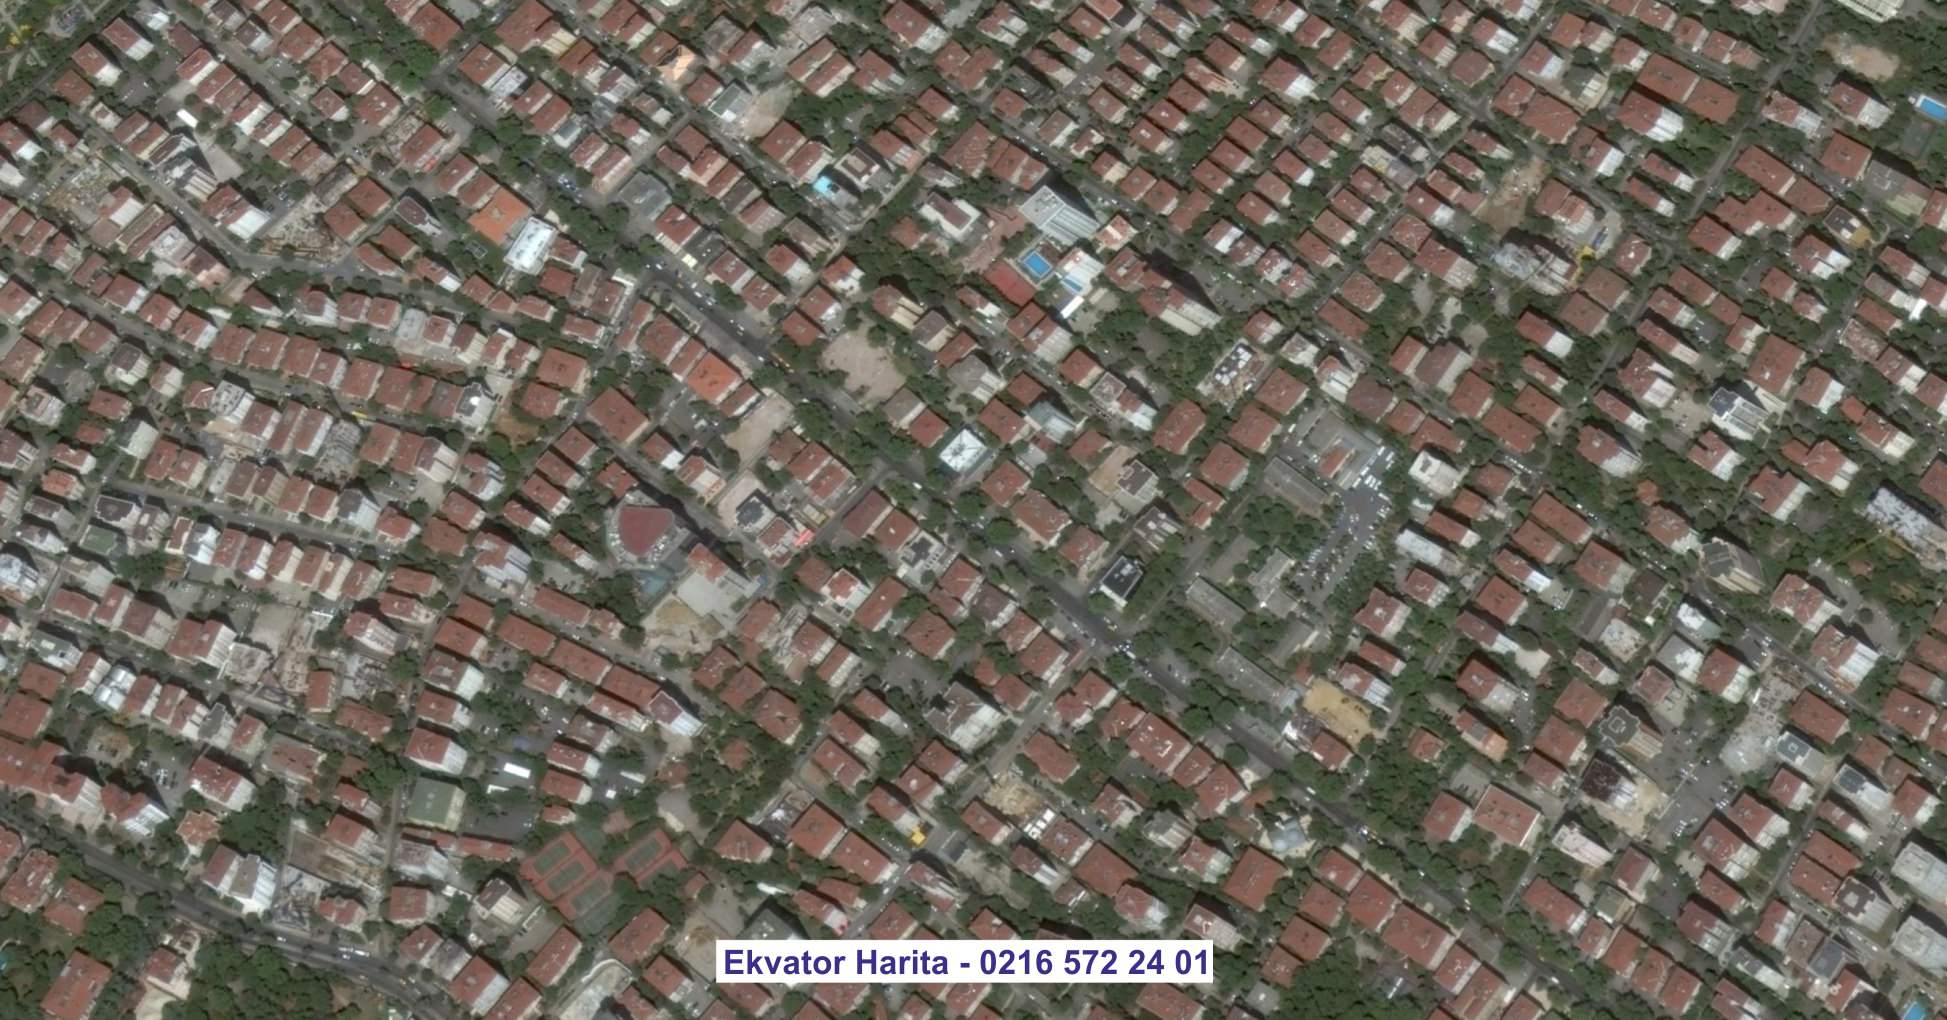 Elbab Uydu Görüntüsü Örnek Fotoğrafı